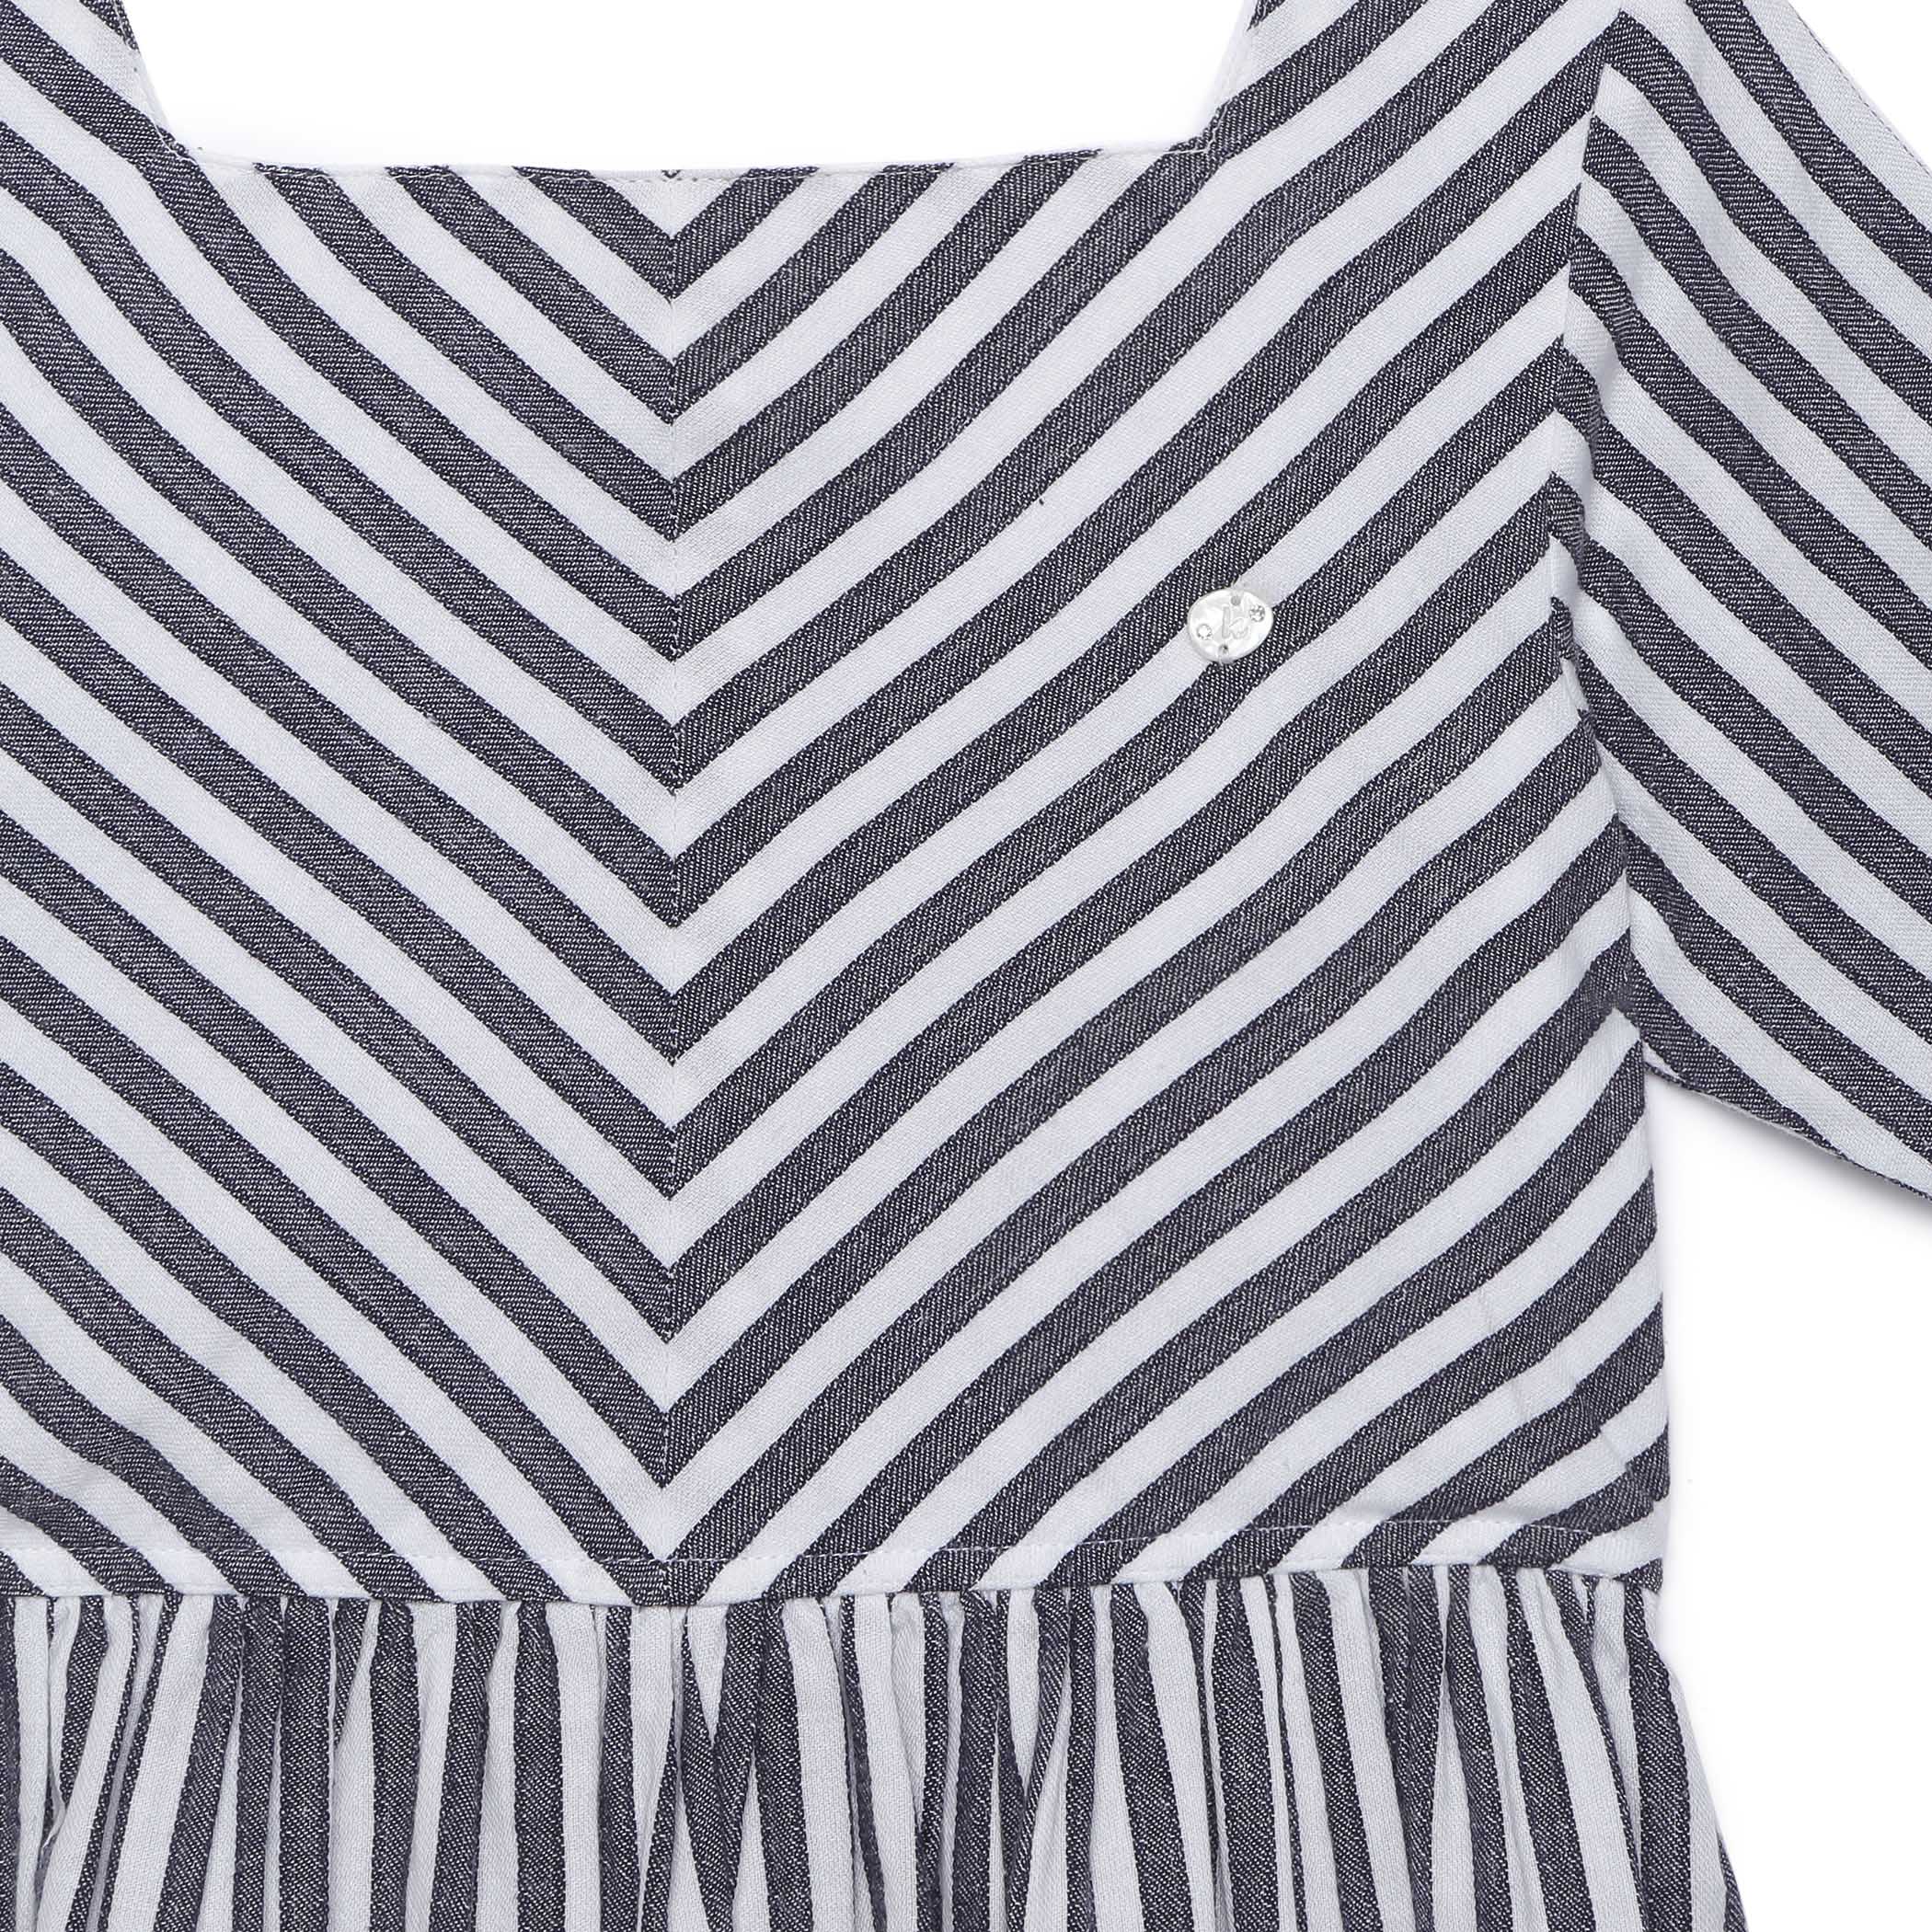 Kid Girls Classic Stripe Dress